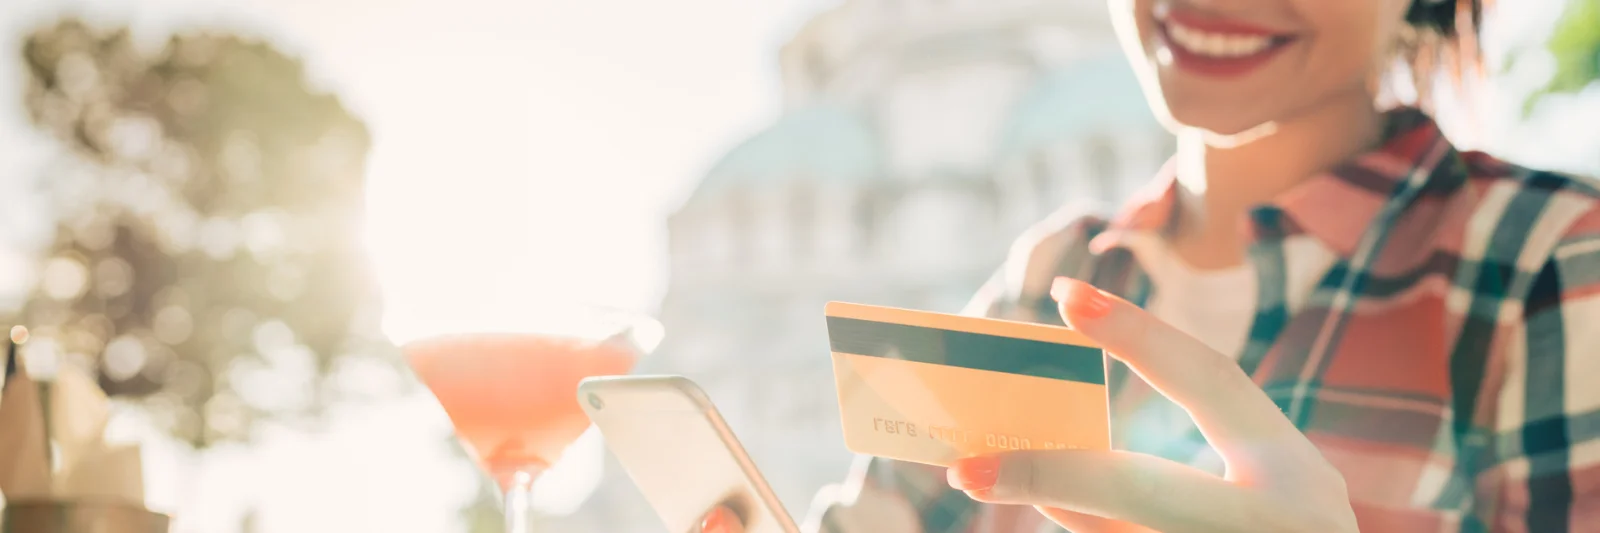 Mox ist eine App-basierte Bank, die den Umgang mit Geld einfacher und intuitiver macht, indem sie den Kunden Finanzwissen vermittelt und einen &quot;One-Stop-Shop&quot; für alle Bankdienstleistungen und Lifestyle-Belohnungen bietet. Dazu gehören zielgerichtete Ausgaben, Shopping-Rechner und unzählige Bankkarten.